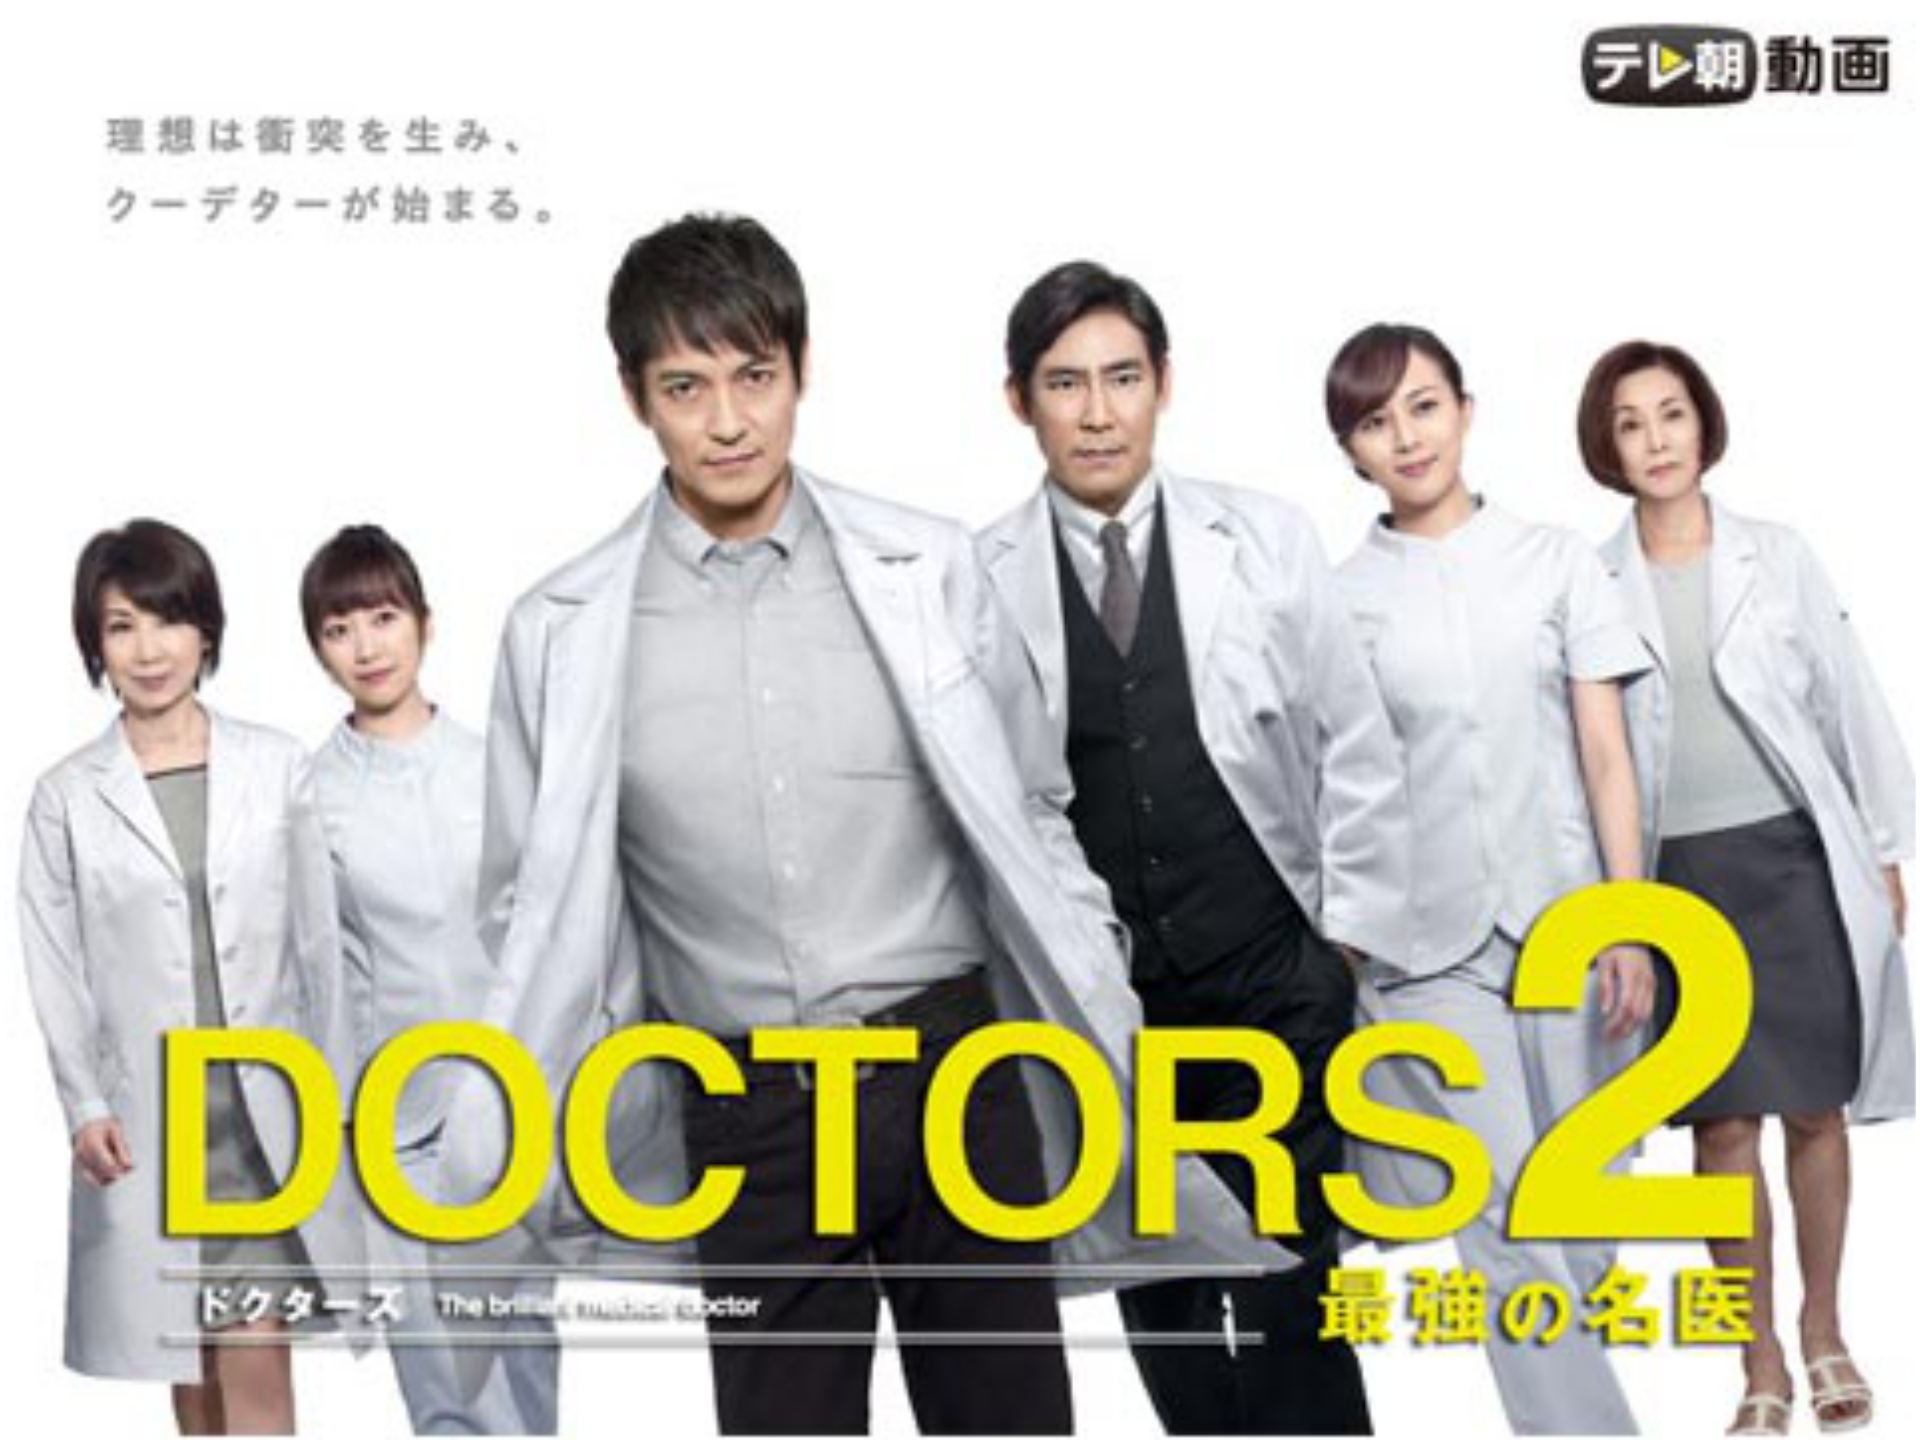 ドラマ Doctors 2 最強の名医 の動画まとめ 初月無料 動画配信サービスのビデオマーケット